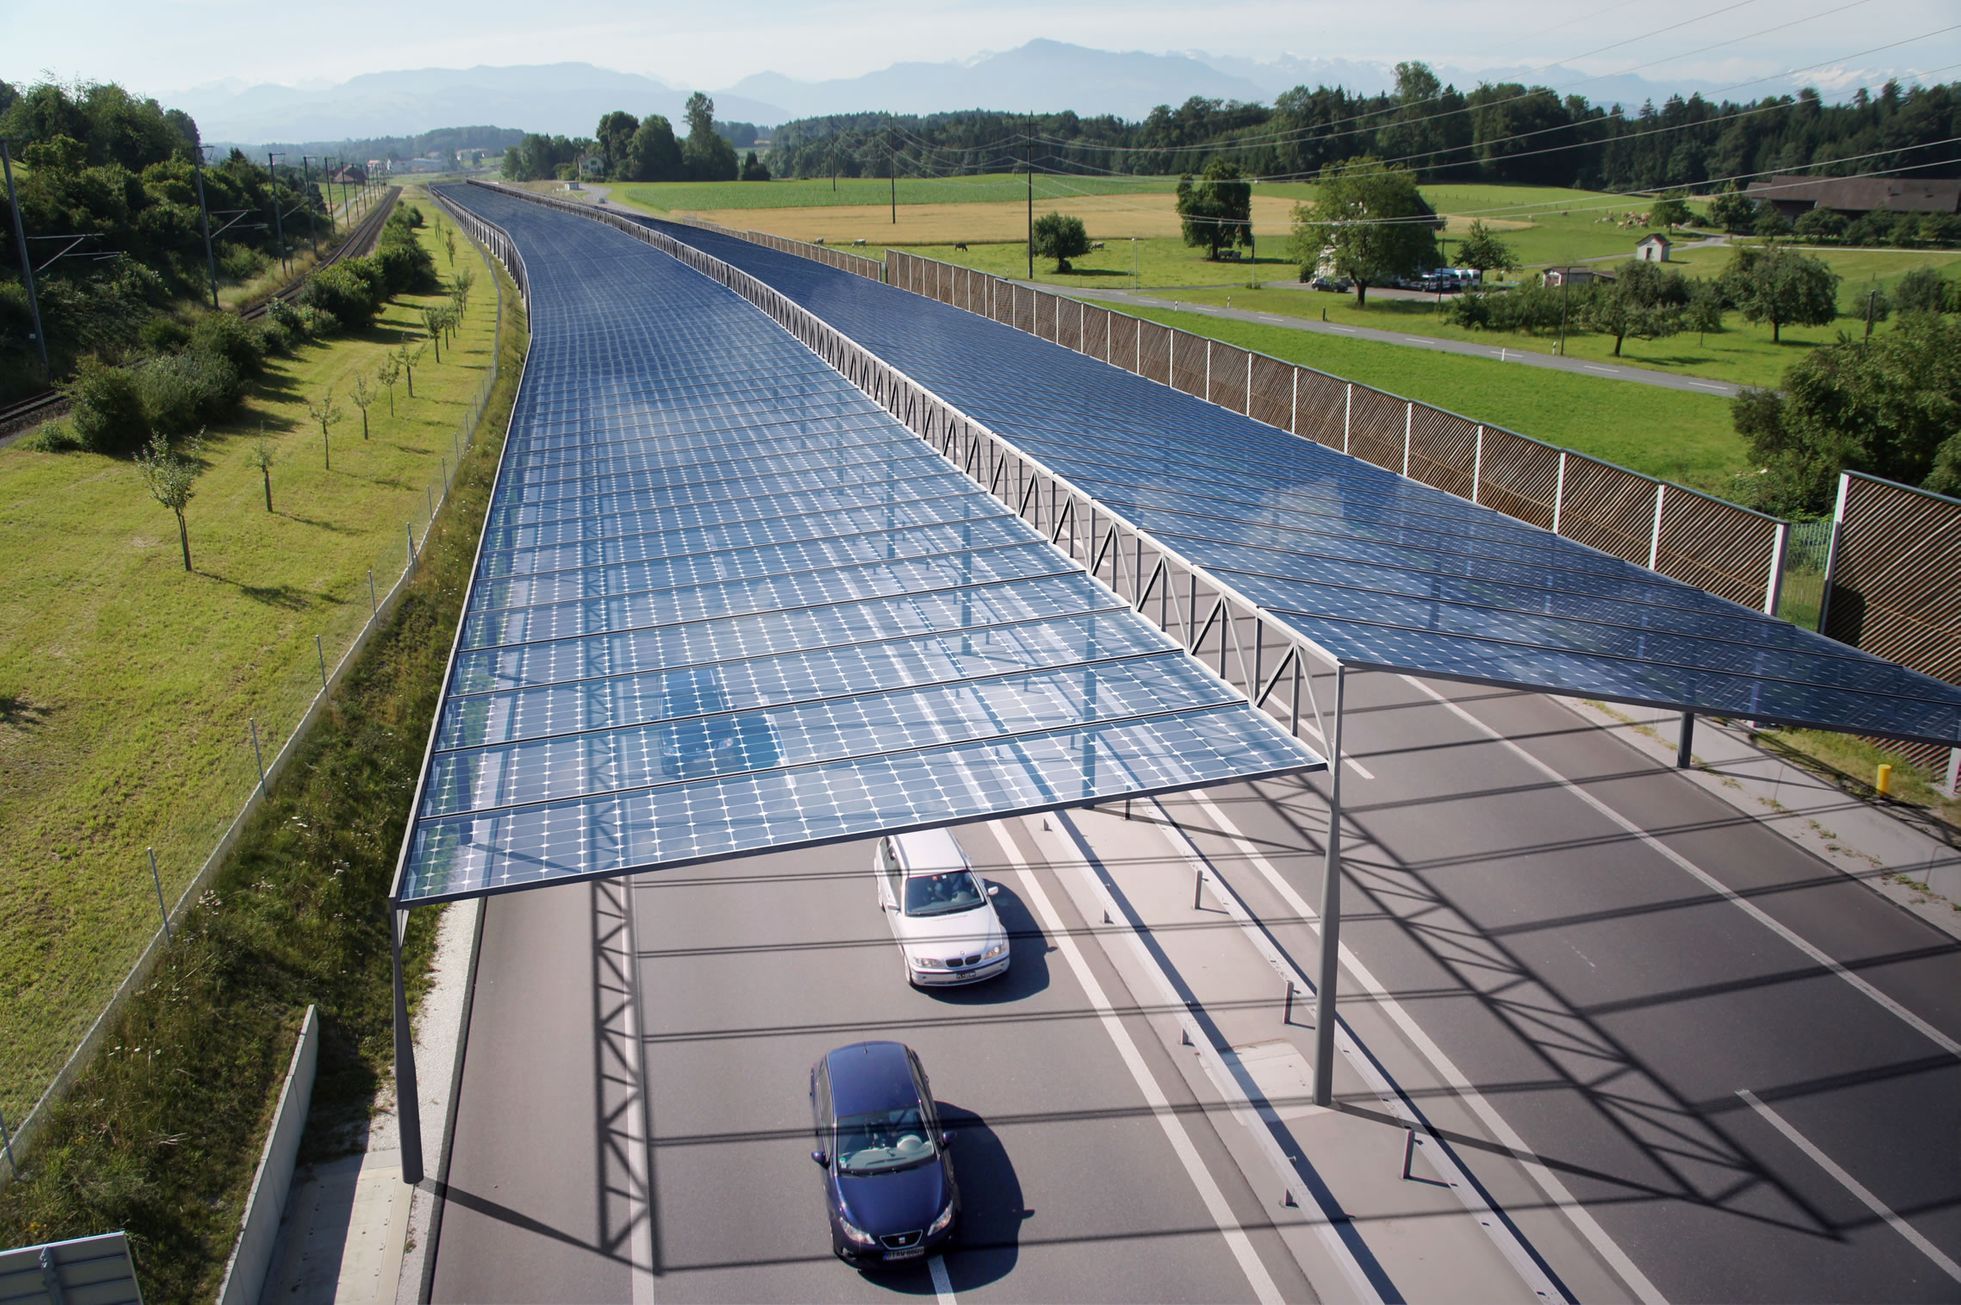 Vizualice solární střechy nad švýcarskou dálnicí A4 u obcí Dachlissen a Knonau, jižně od Curychu.